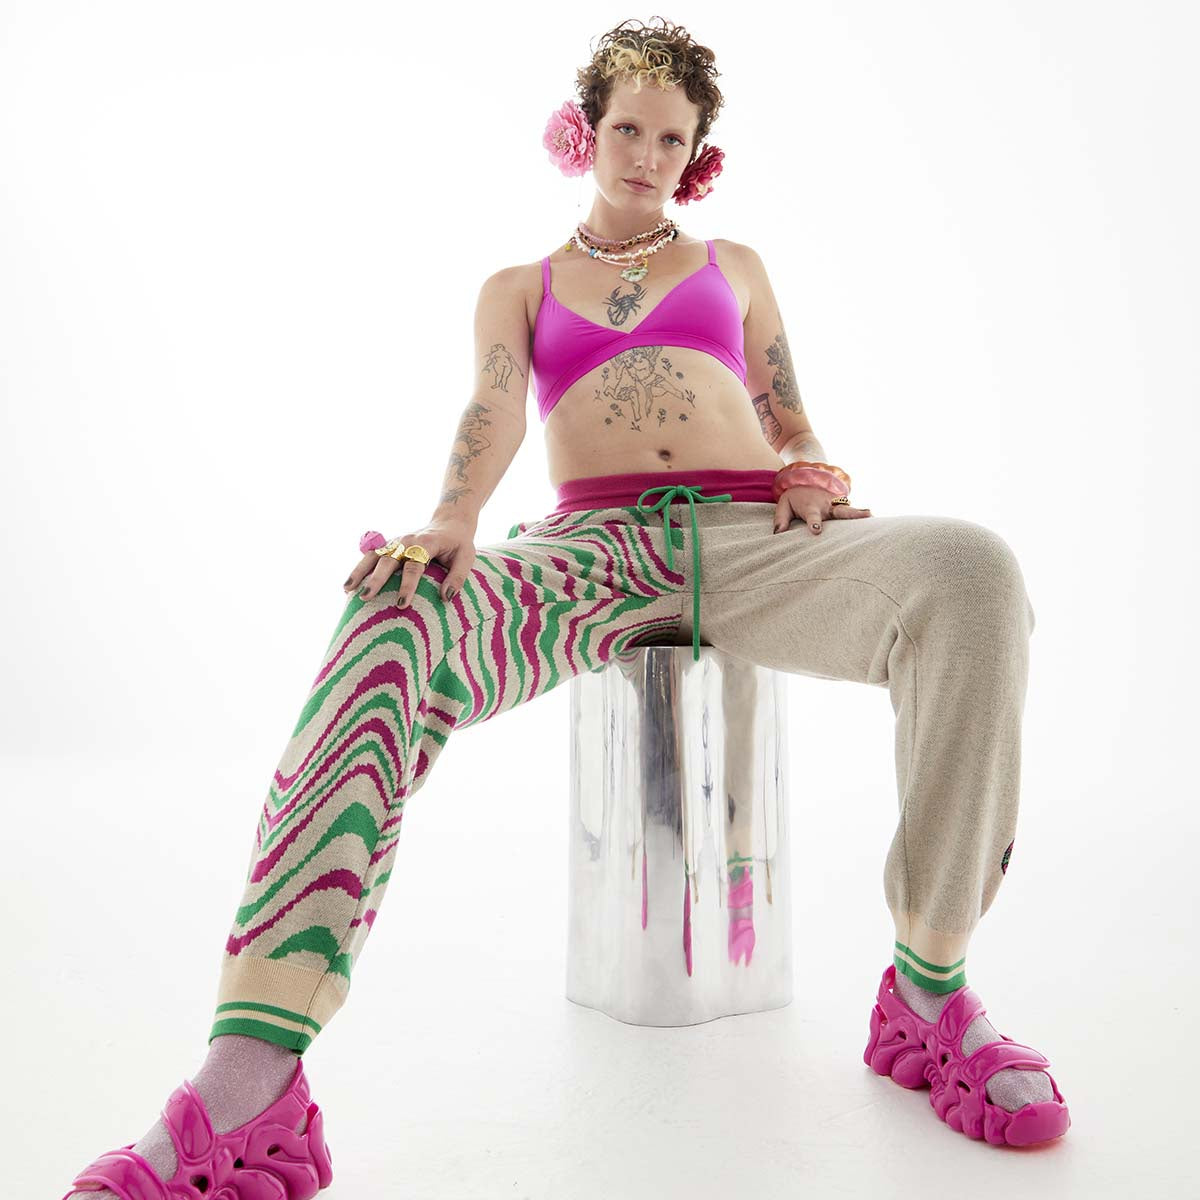 WAH-WAH Brian Blomerth LSD-25 Sweatpants